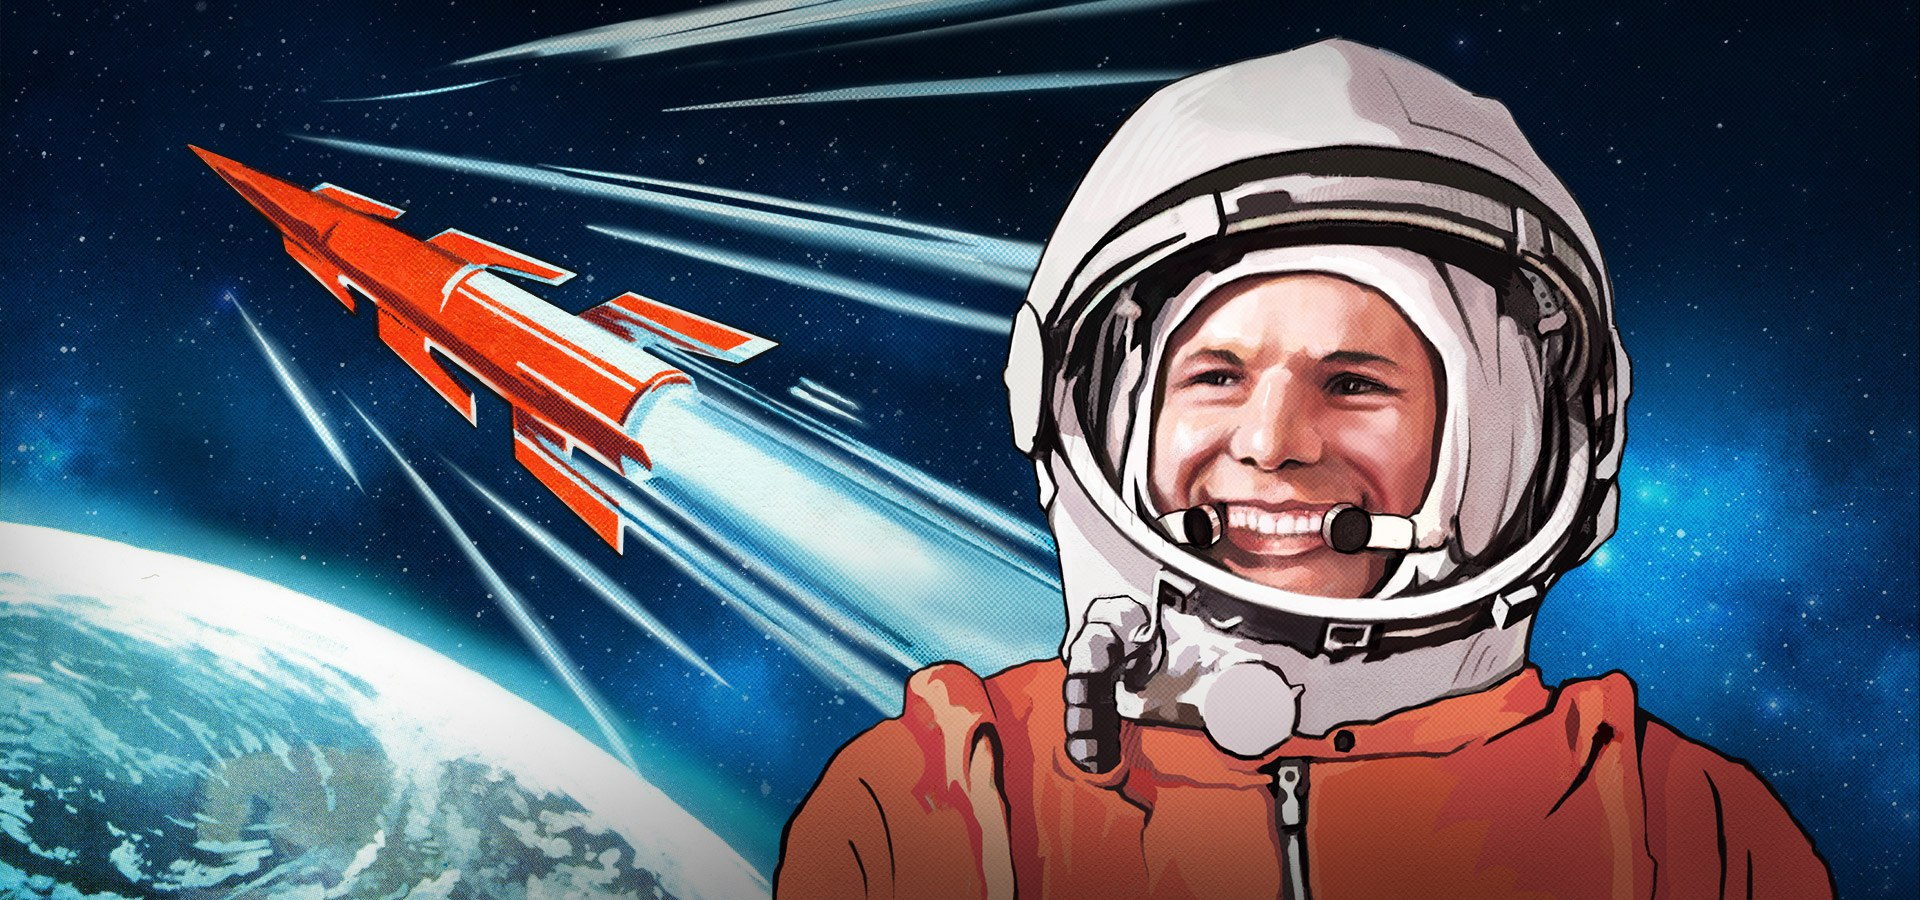 60 Лет полету в космос Юрия Гагарина